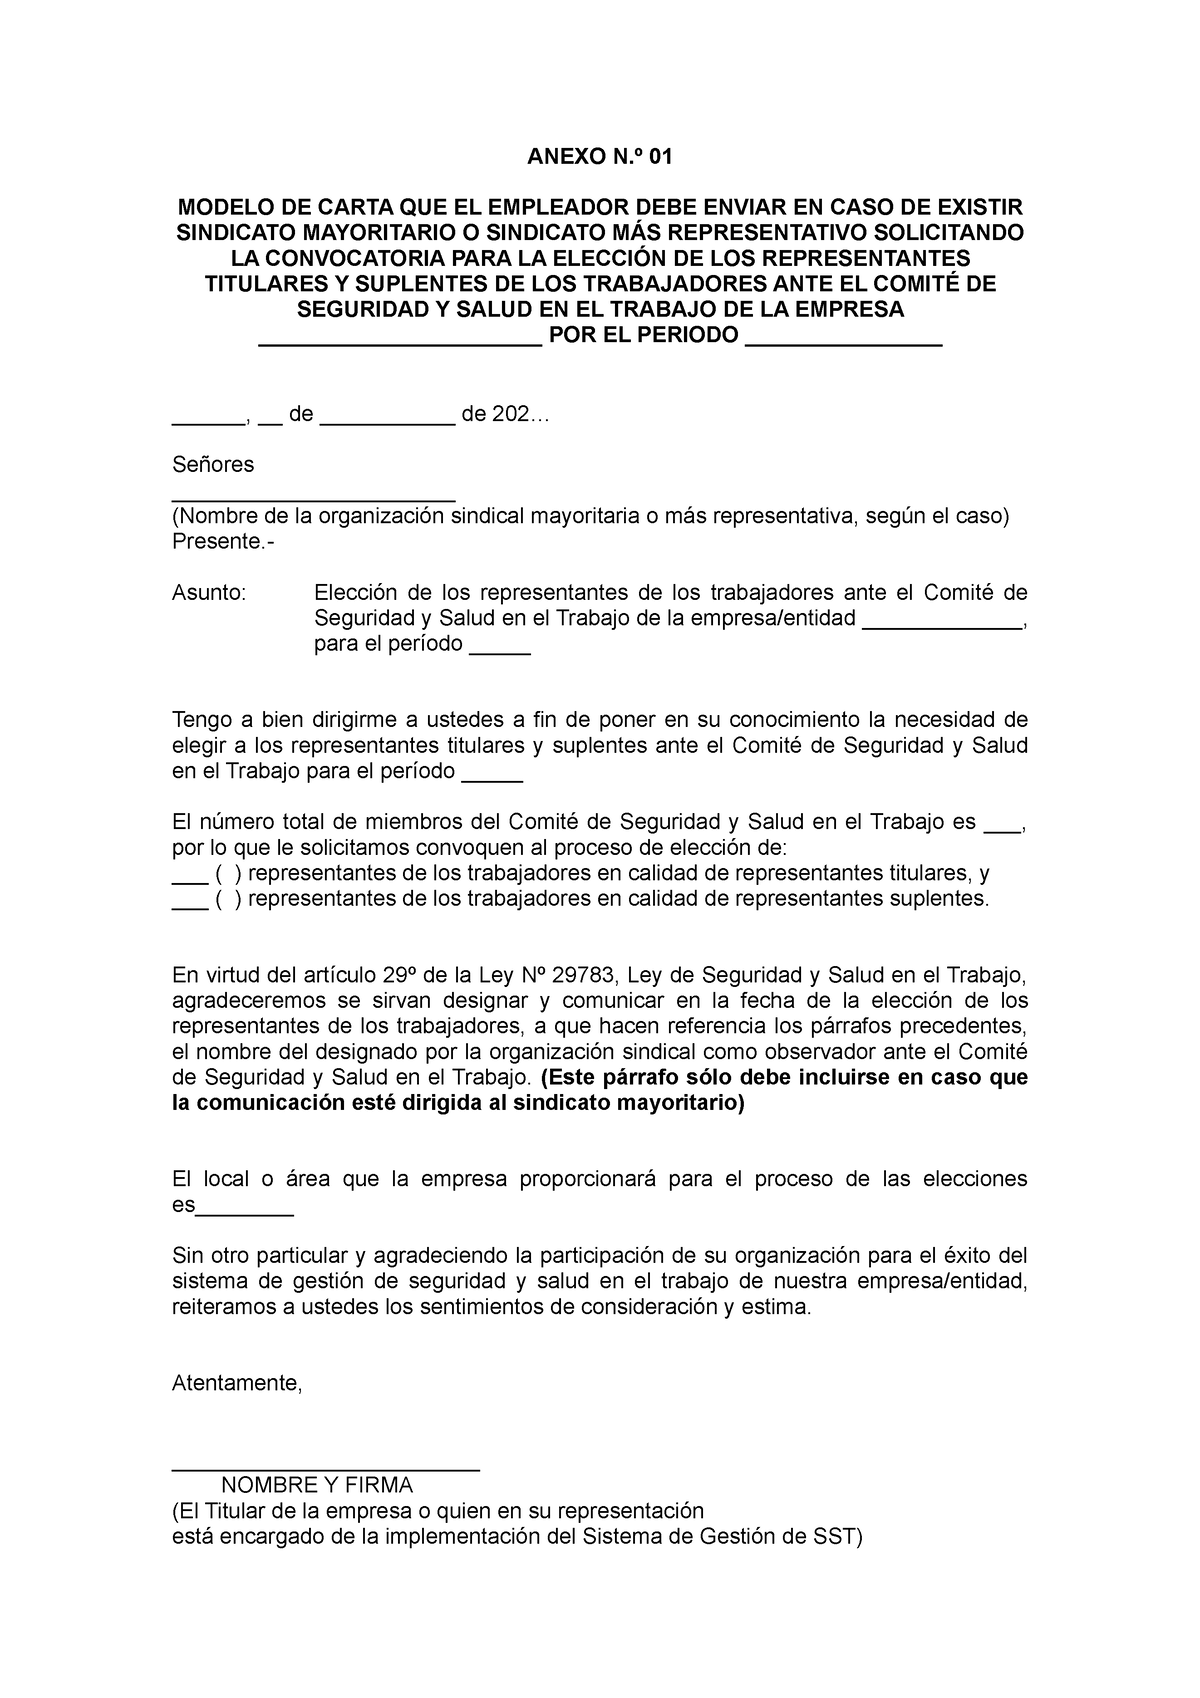 Anexo 1. Modelo de carta que debe enviar el empleador al sindicato - ANEXO  N.º 01 MODELO DE CARTA - Studocu